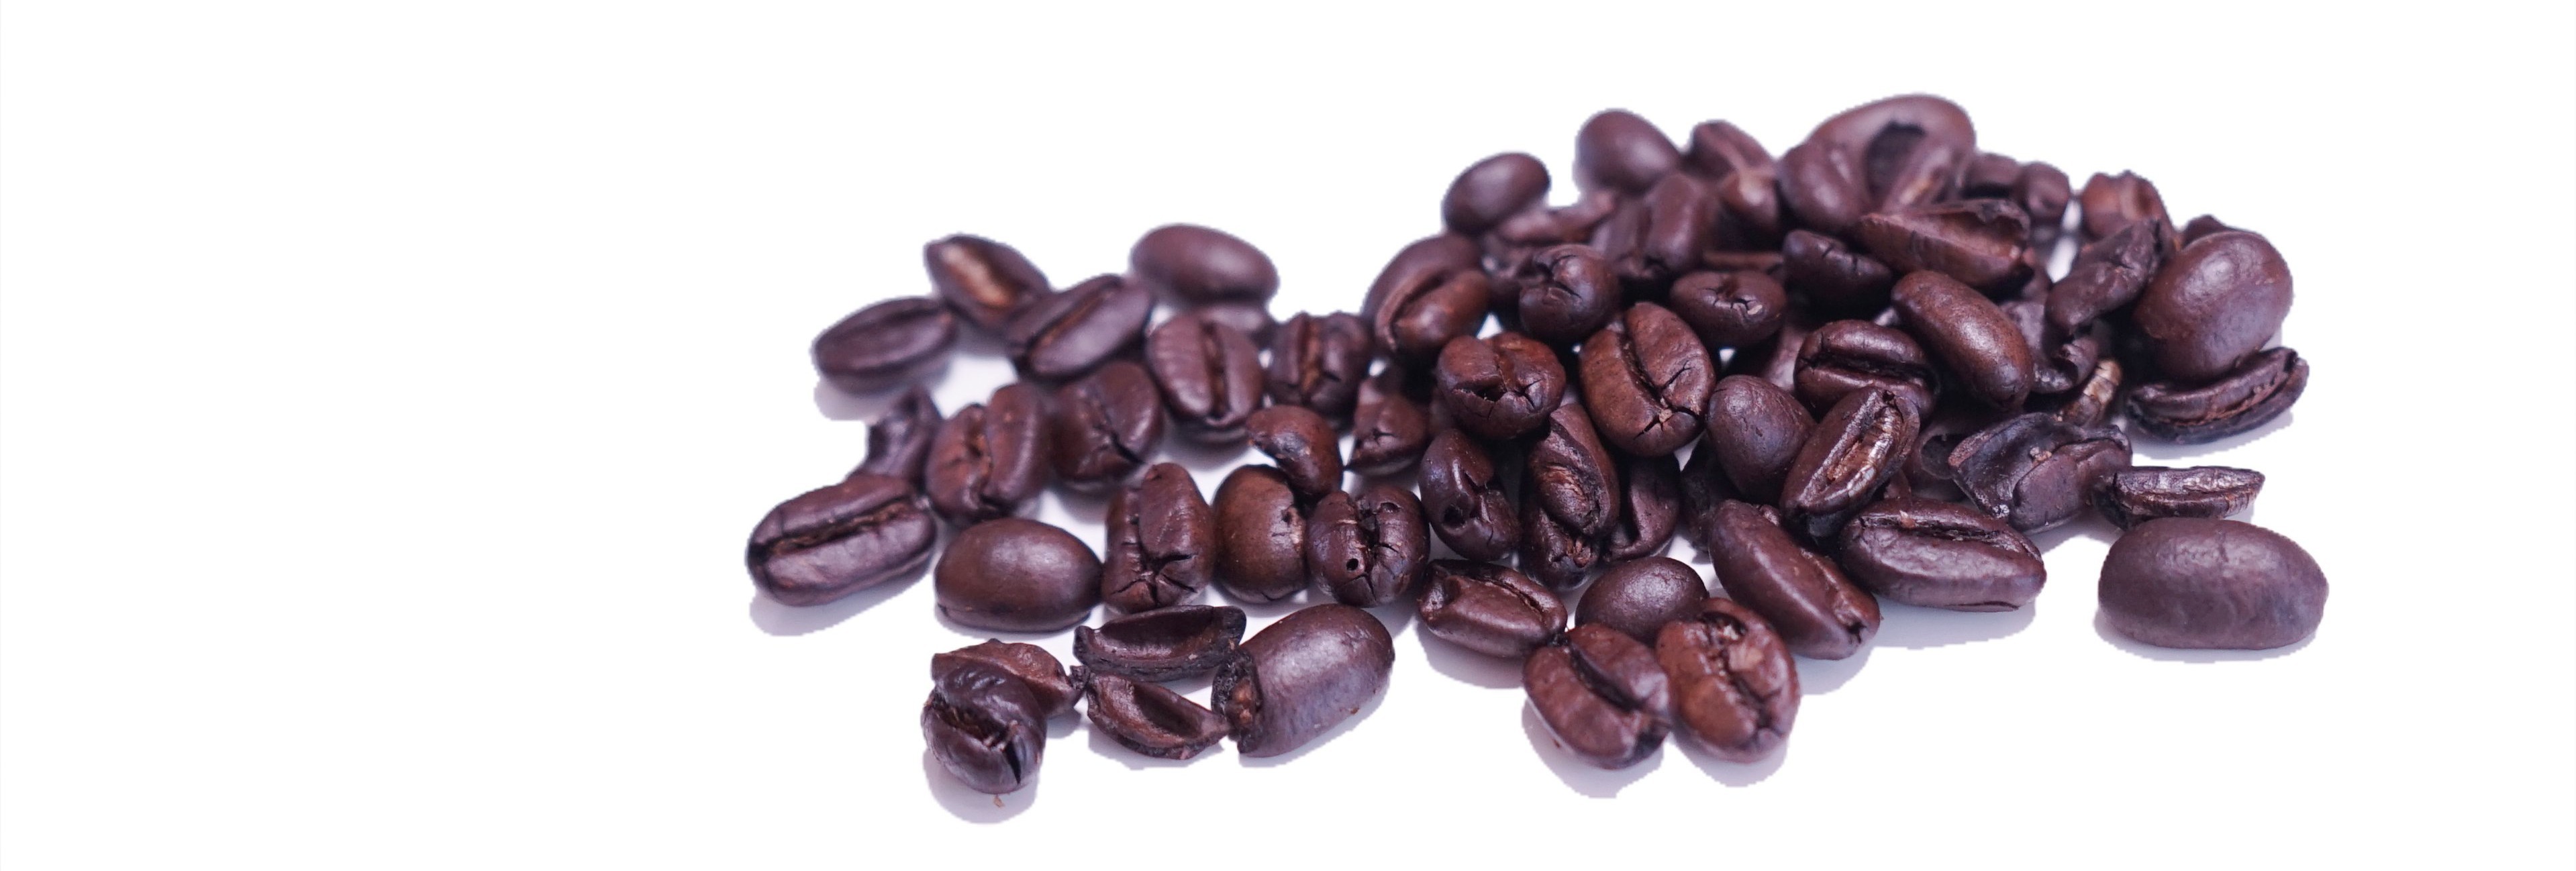 焙煎されたコーヒー豆